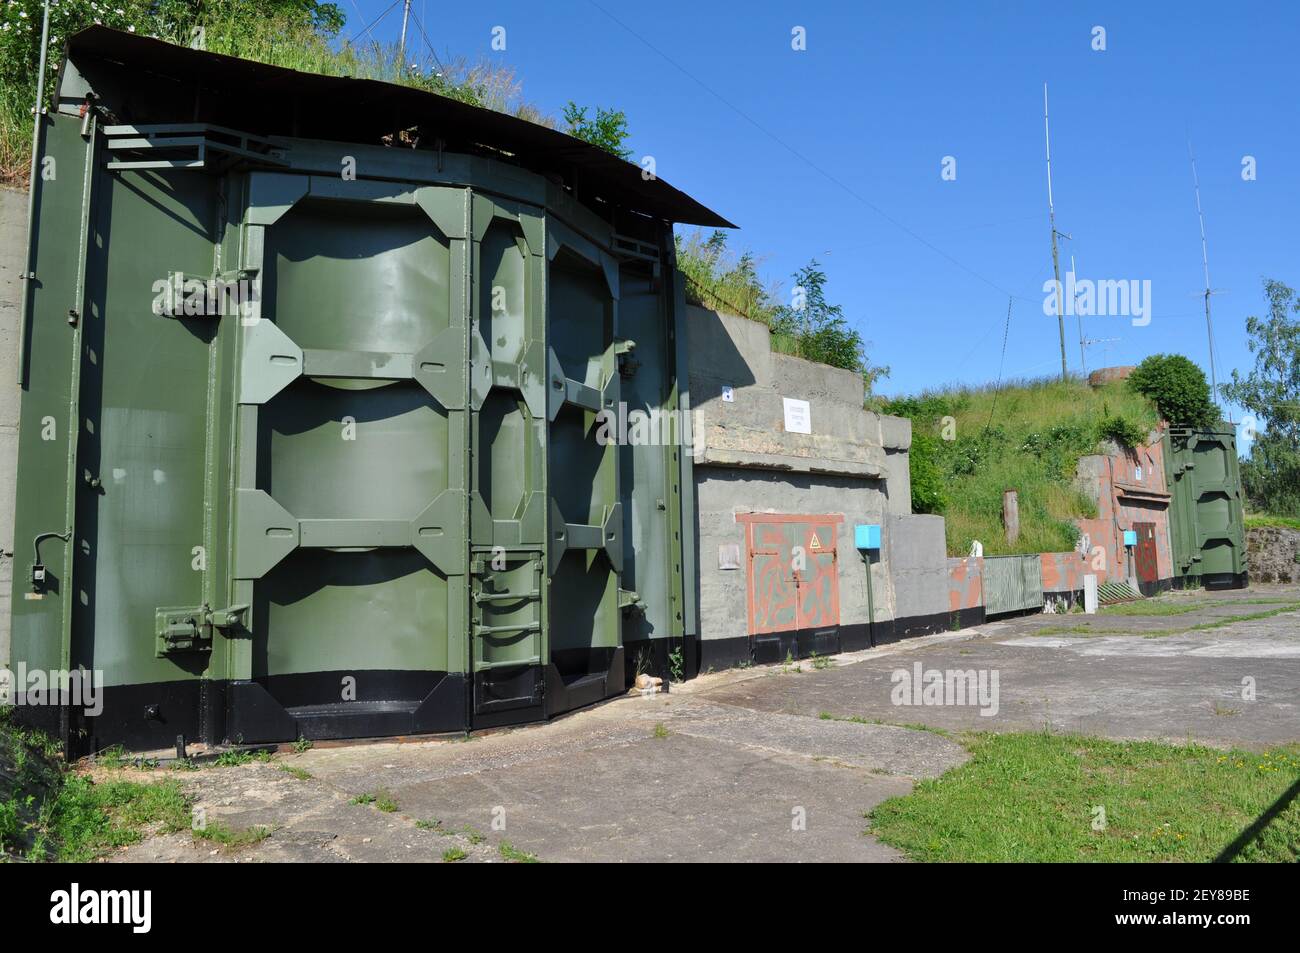 Ehemalige Sonderwaffenlager (Bunker granit Typ 1) Für atomare Kernwaffen (Atombombe) auf dem Flugplatz Großenhain am 6.6.2016 Banque D'Images